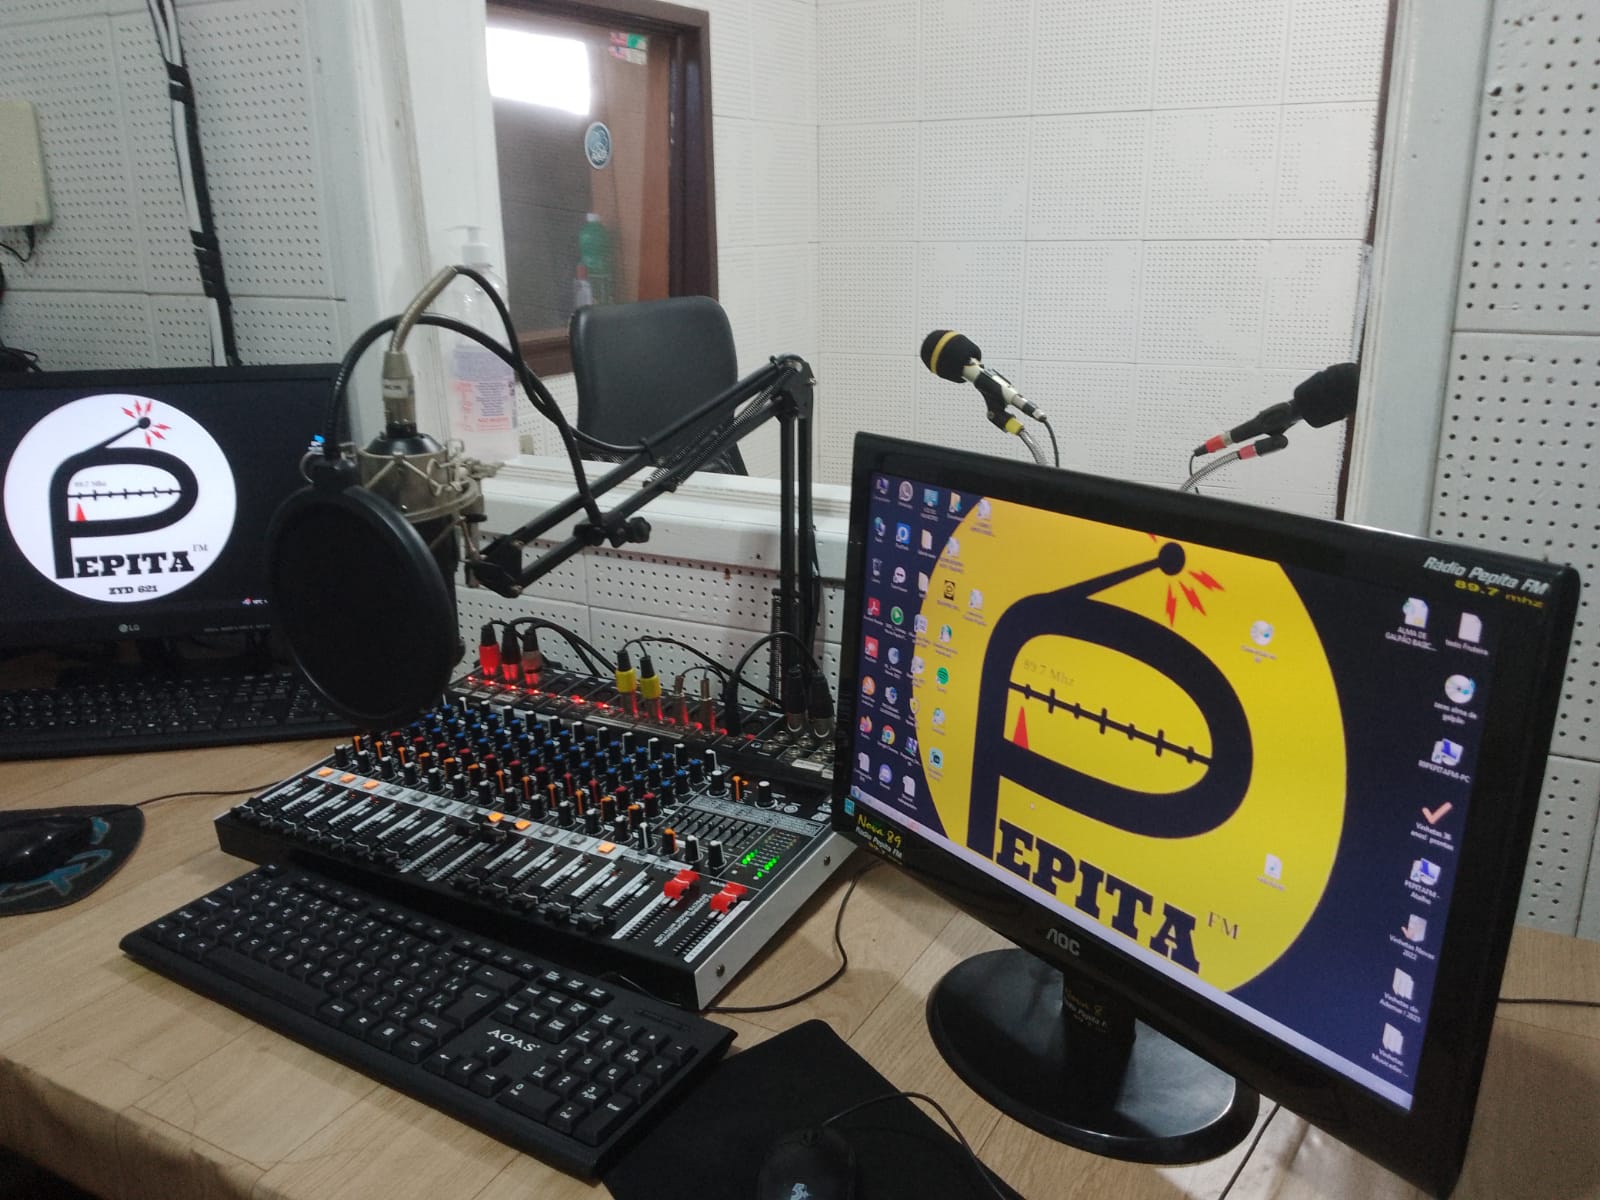 Rádio Pepita FM